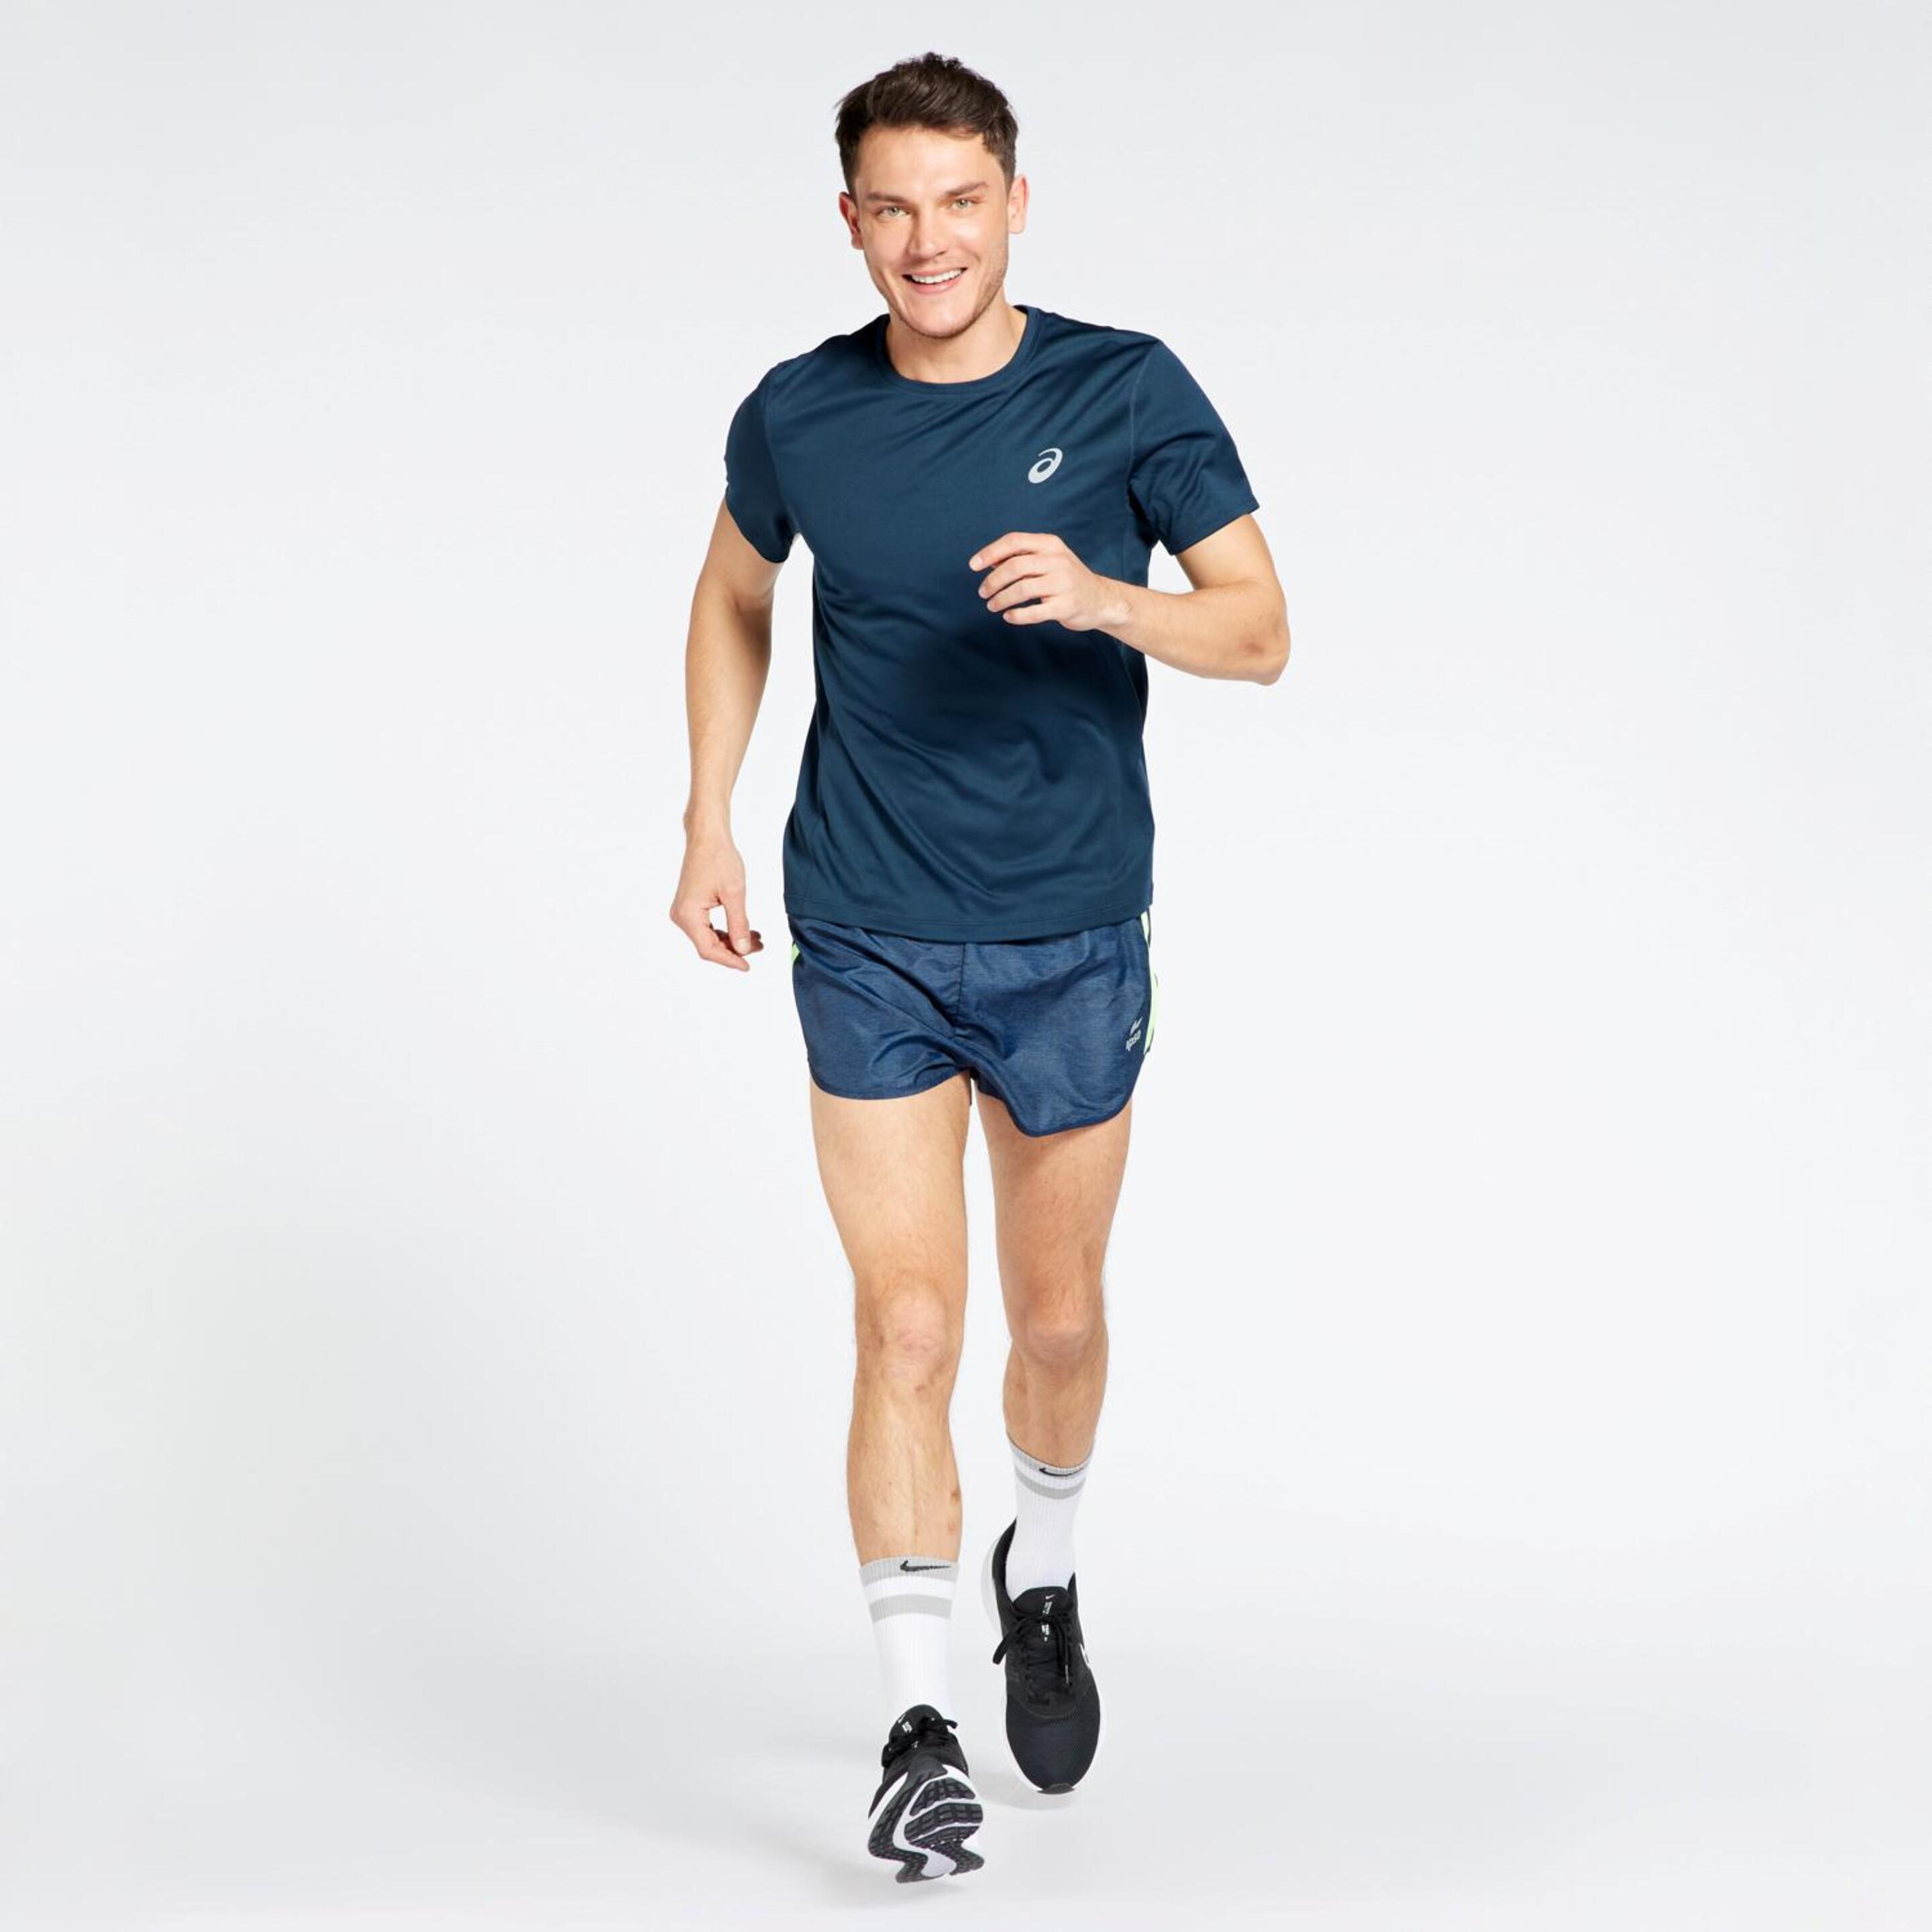 Asics Core - Marino - Camiseta Running Hombre